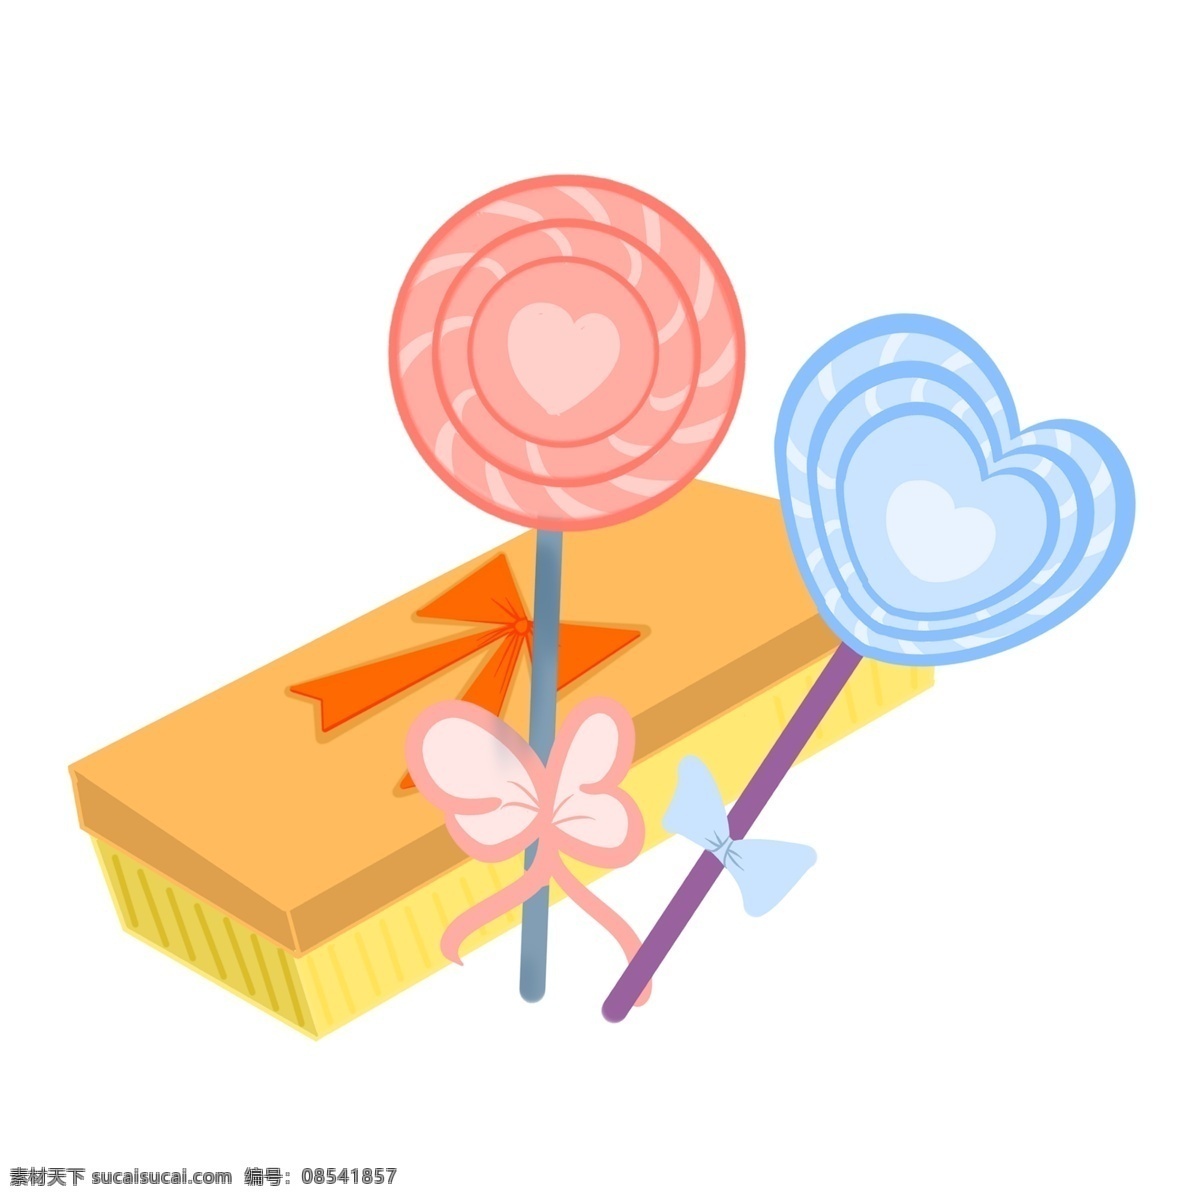 情人节 棒棒糖 礼盒 插画 小 物 漂亮的棒棒糖 心形棒棒糖 手绘棒棒糖 卡通棒棒糖 棒棒糖礼盒